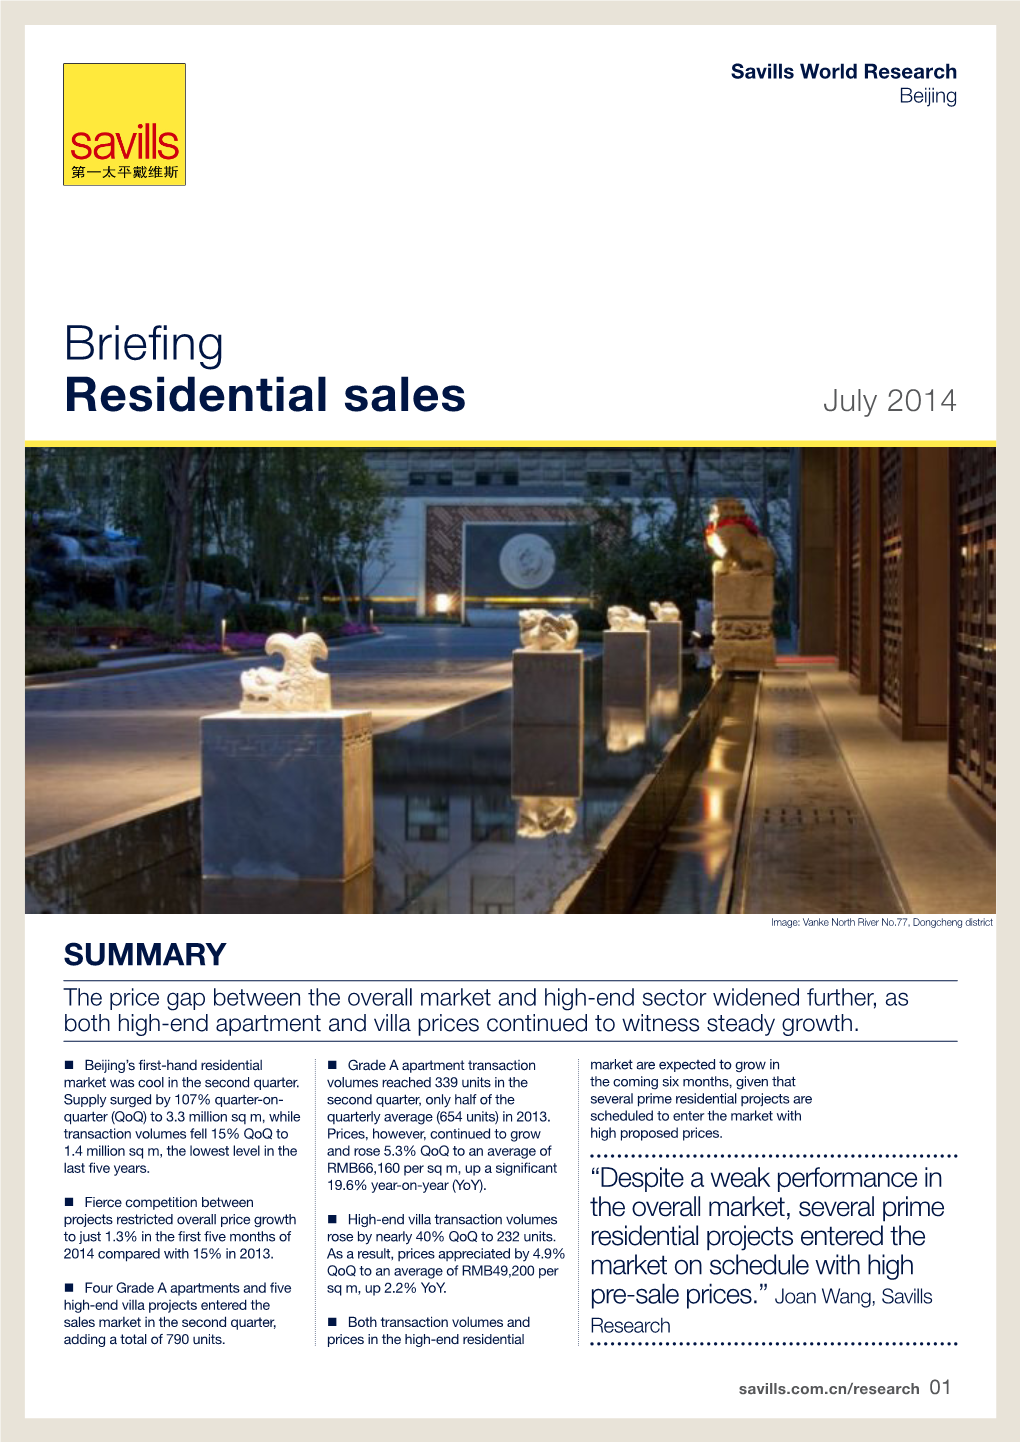 Briefing Residential Sales July 2014